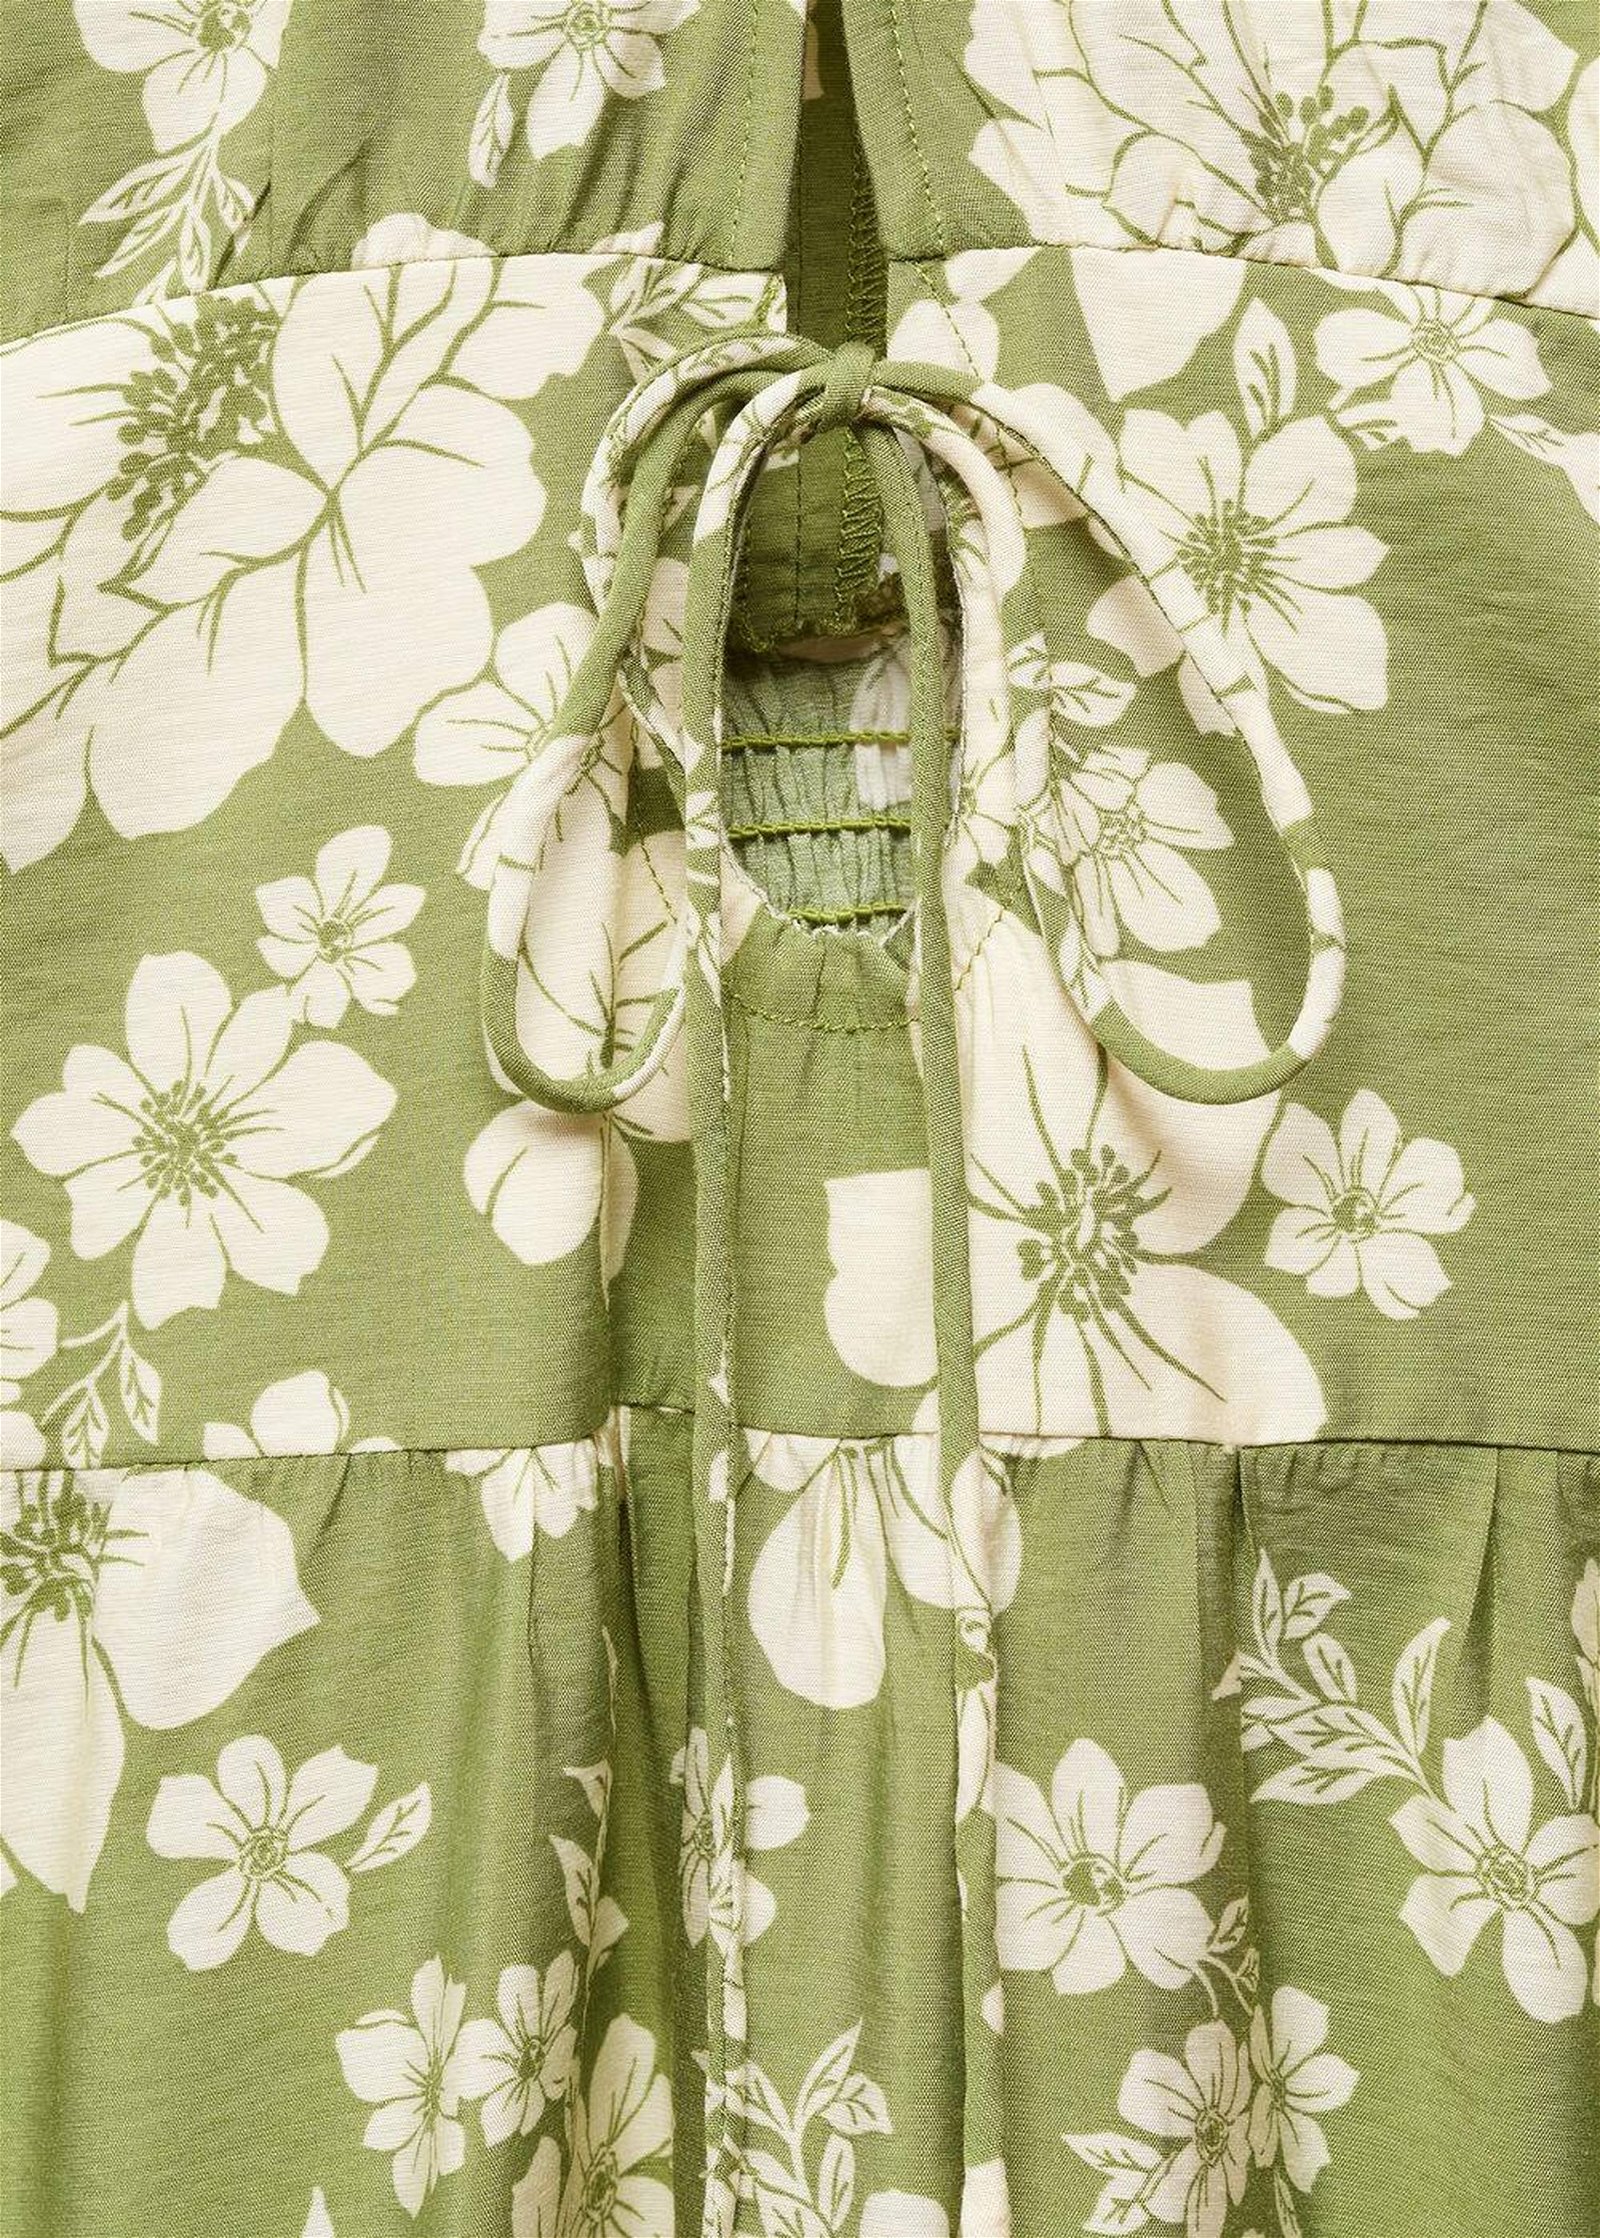 Mango Kadın Desenli Cut-out Detaylı Elbise Yeşil